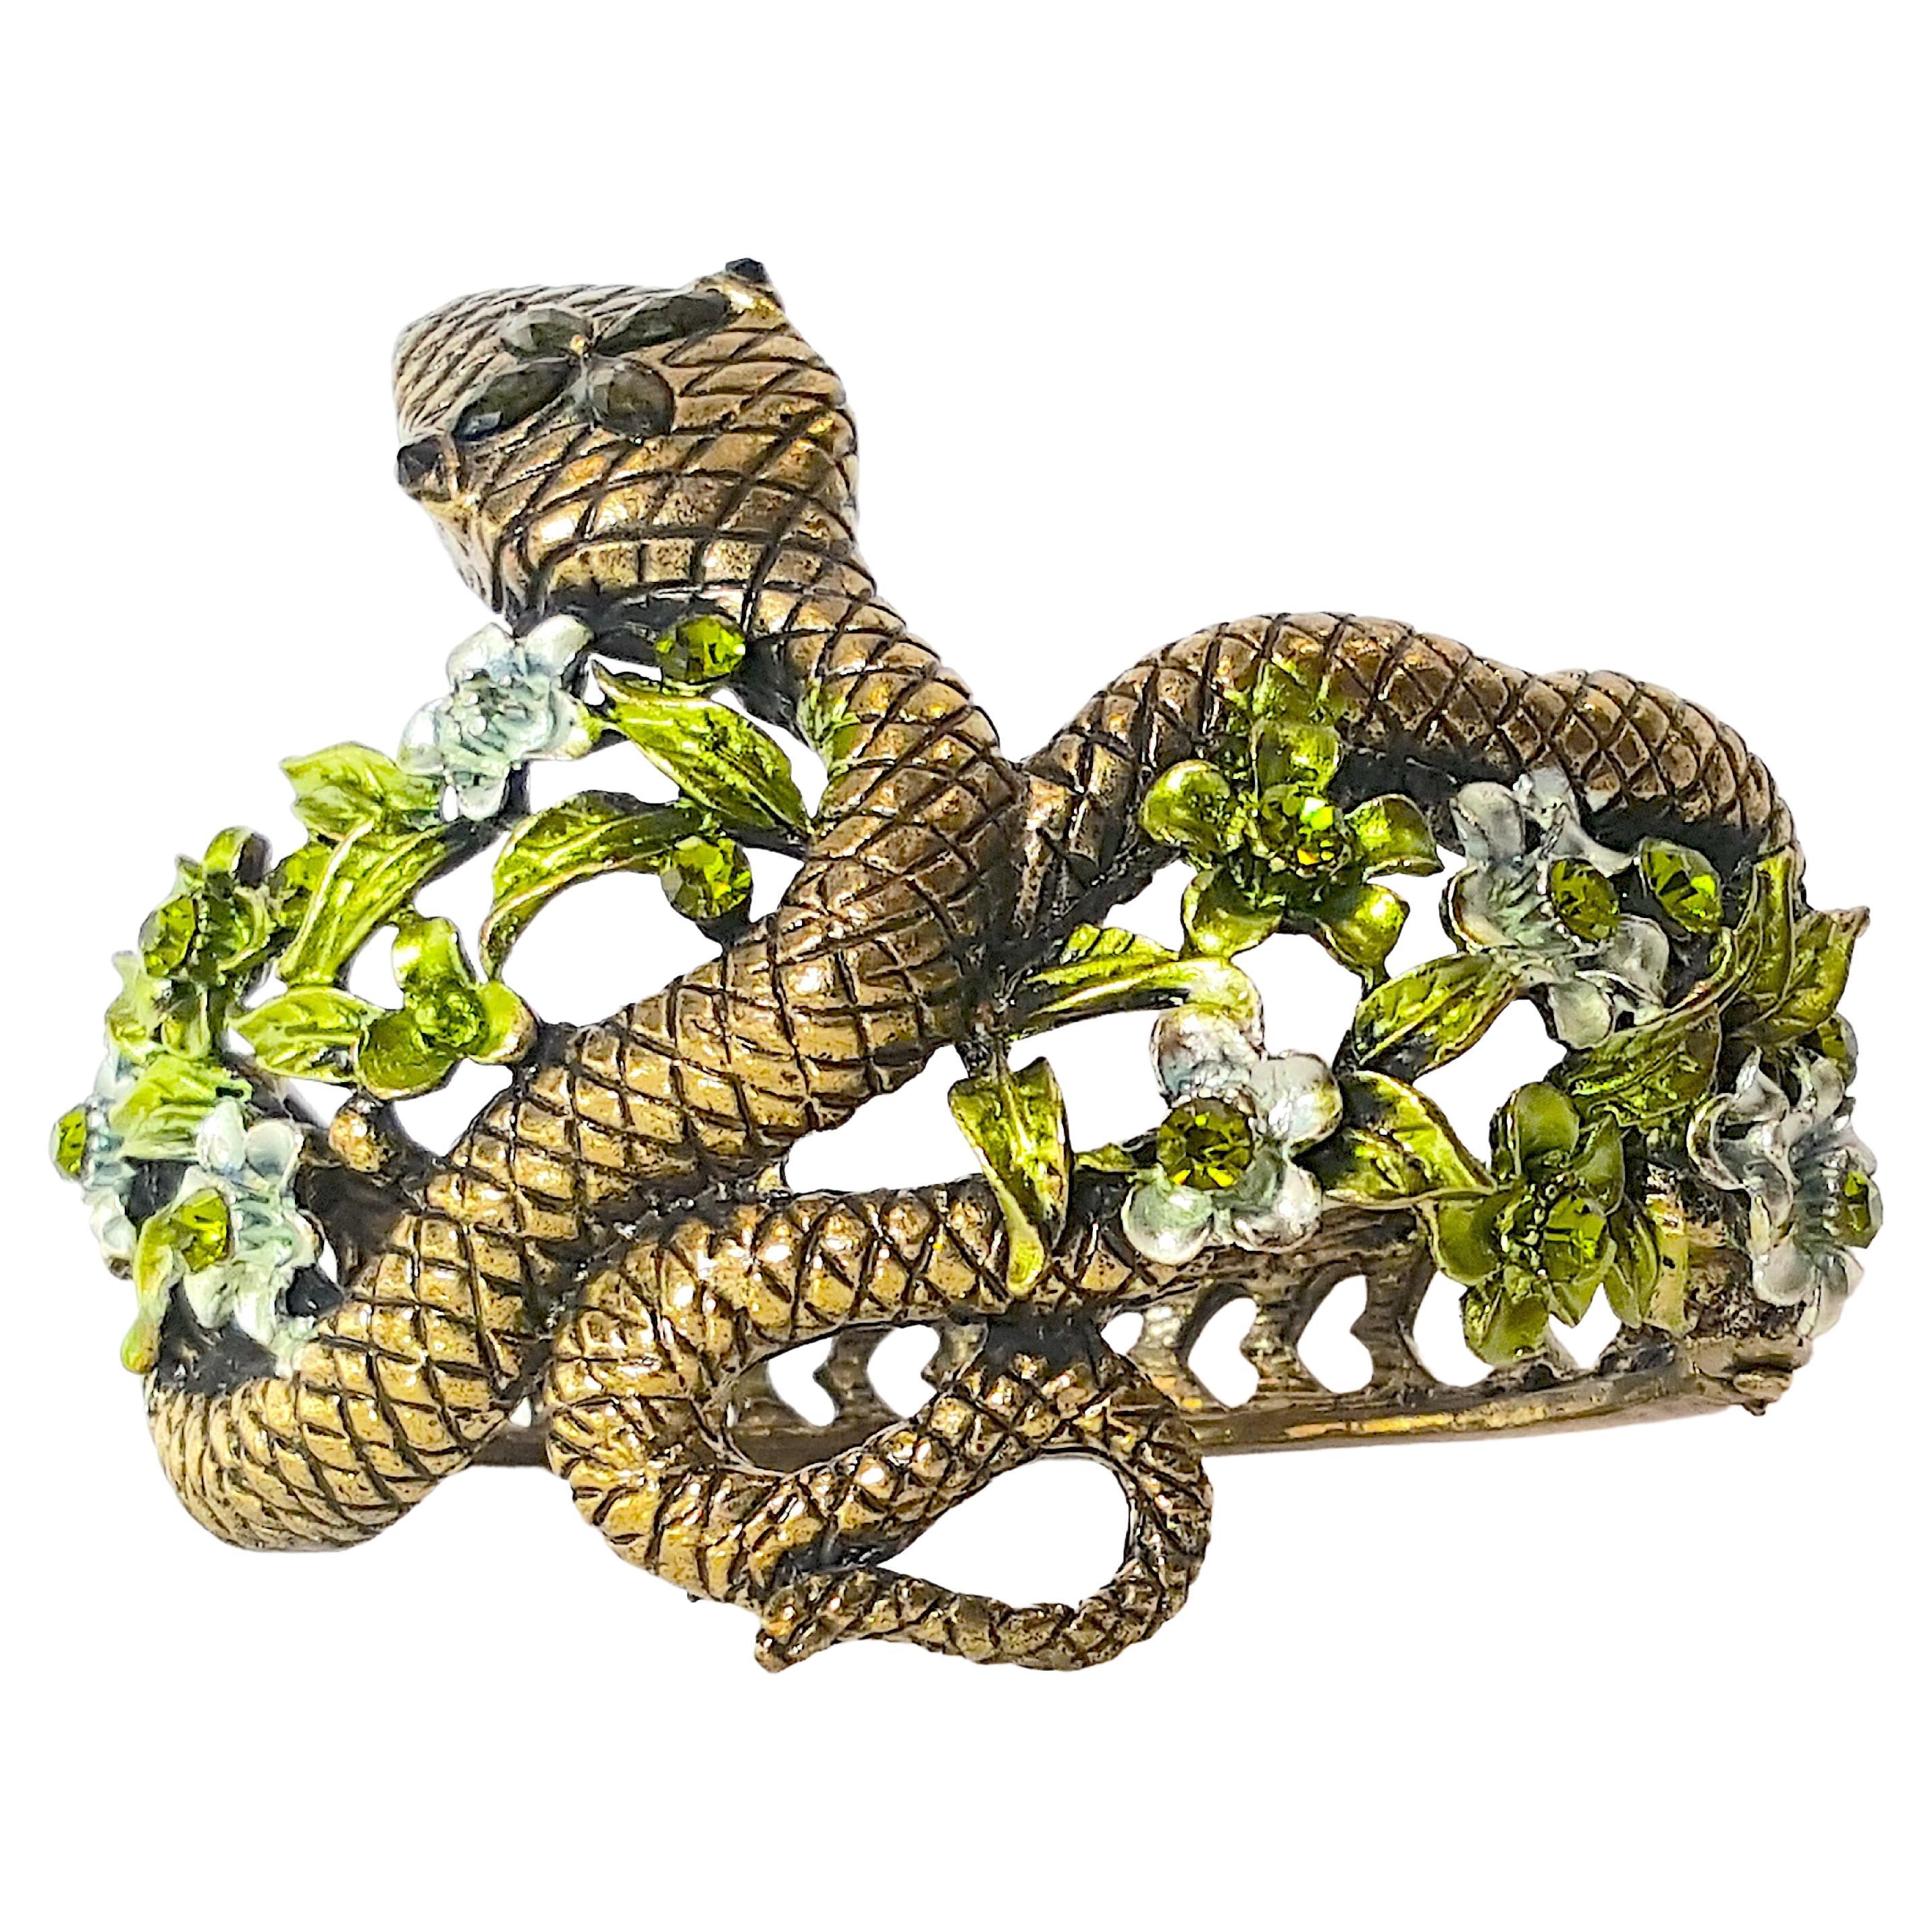 HAR SerpentSnake 1950s Enameled Floral Crystal FiligreeHearts Clamper Bracelet